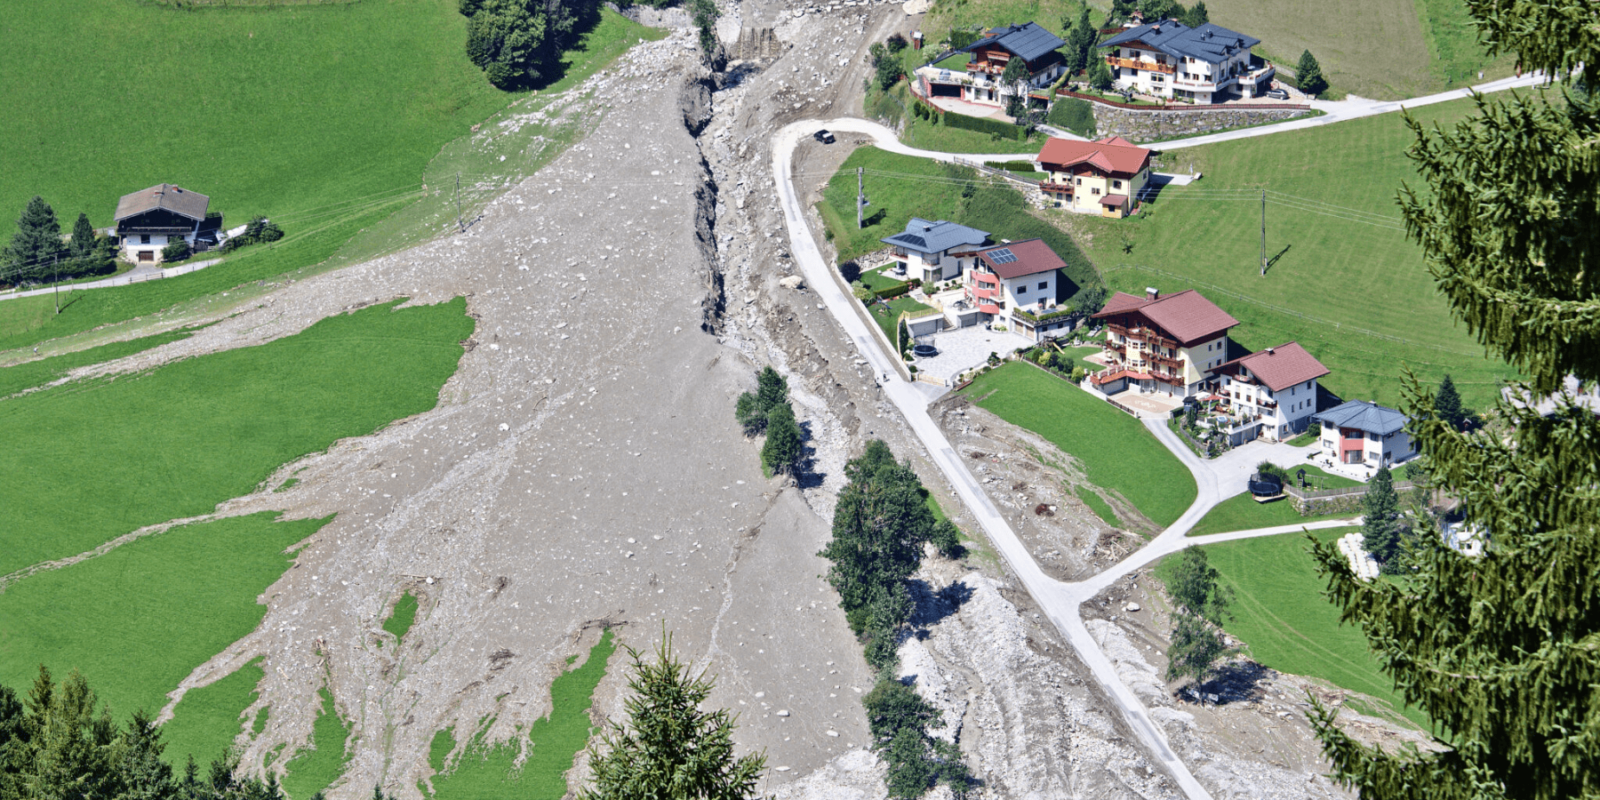 Landslide and debris flows